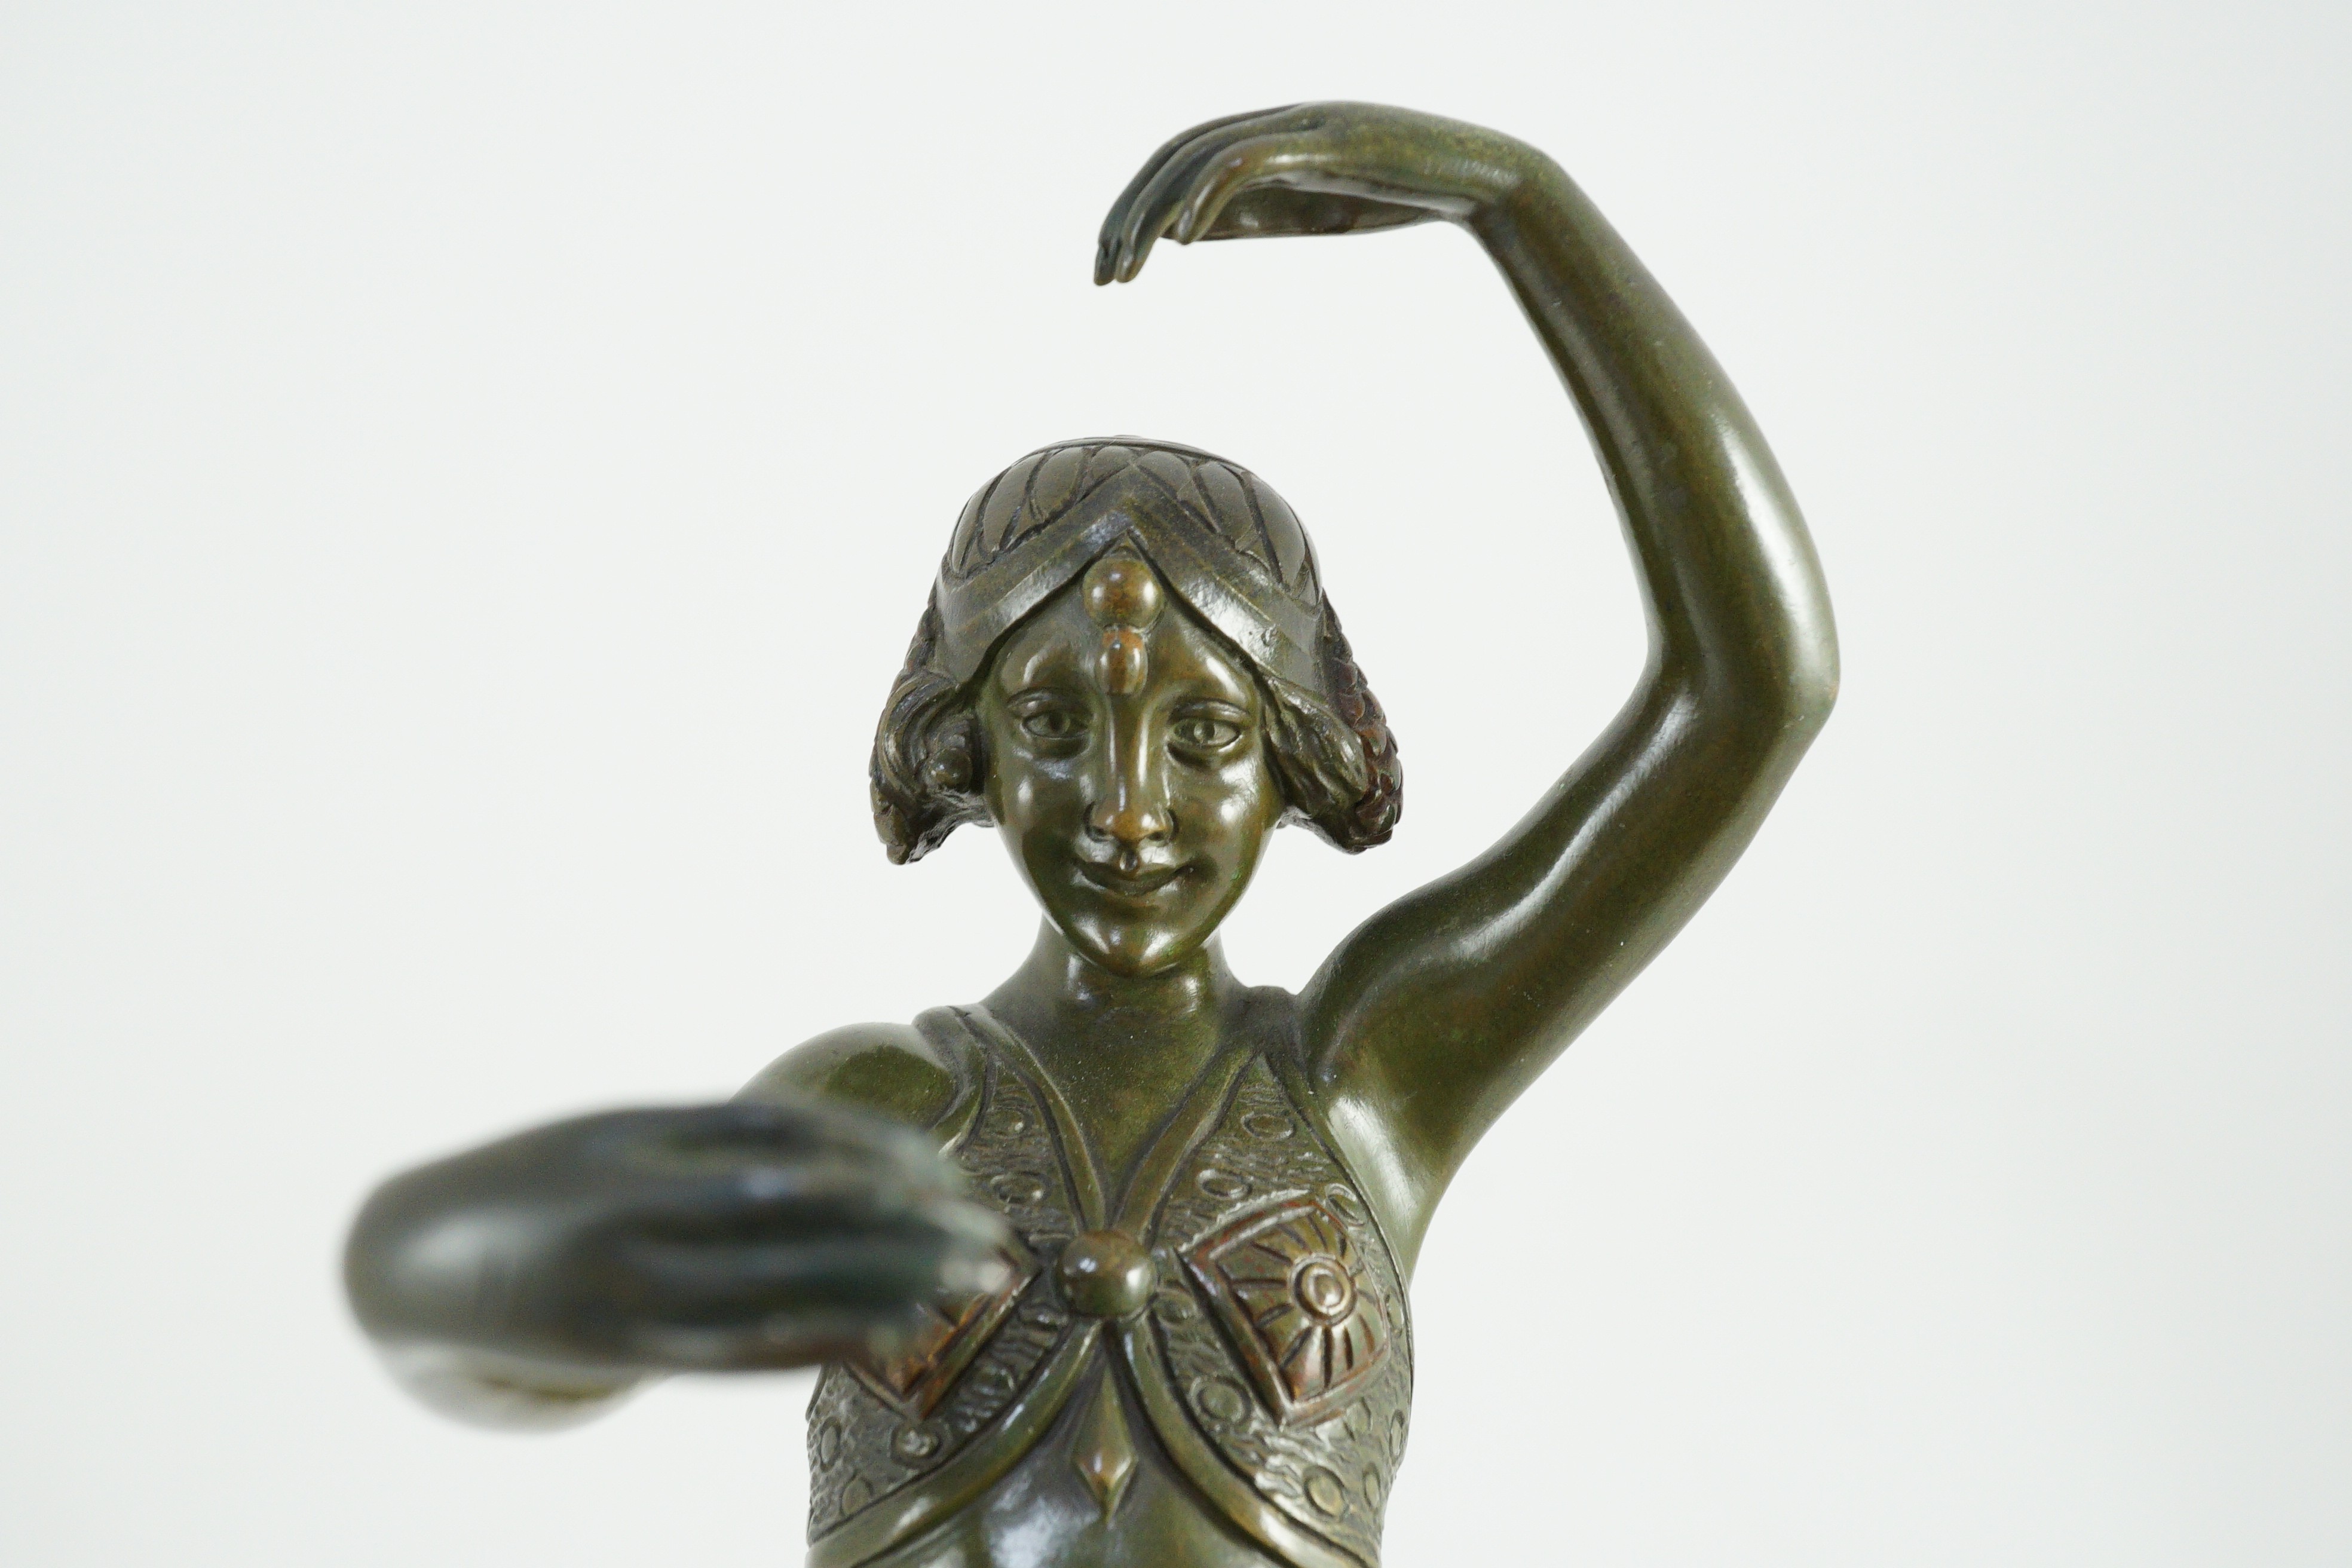 Samuel Lipchytz (1880-1943). A patinated bronze figure of a dancing woman, 40cm high